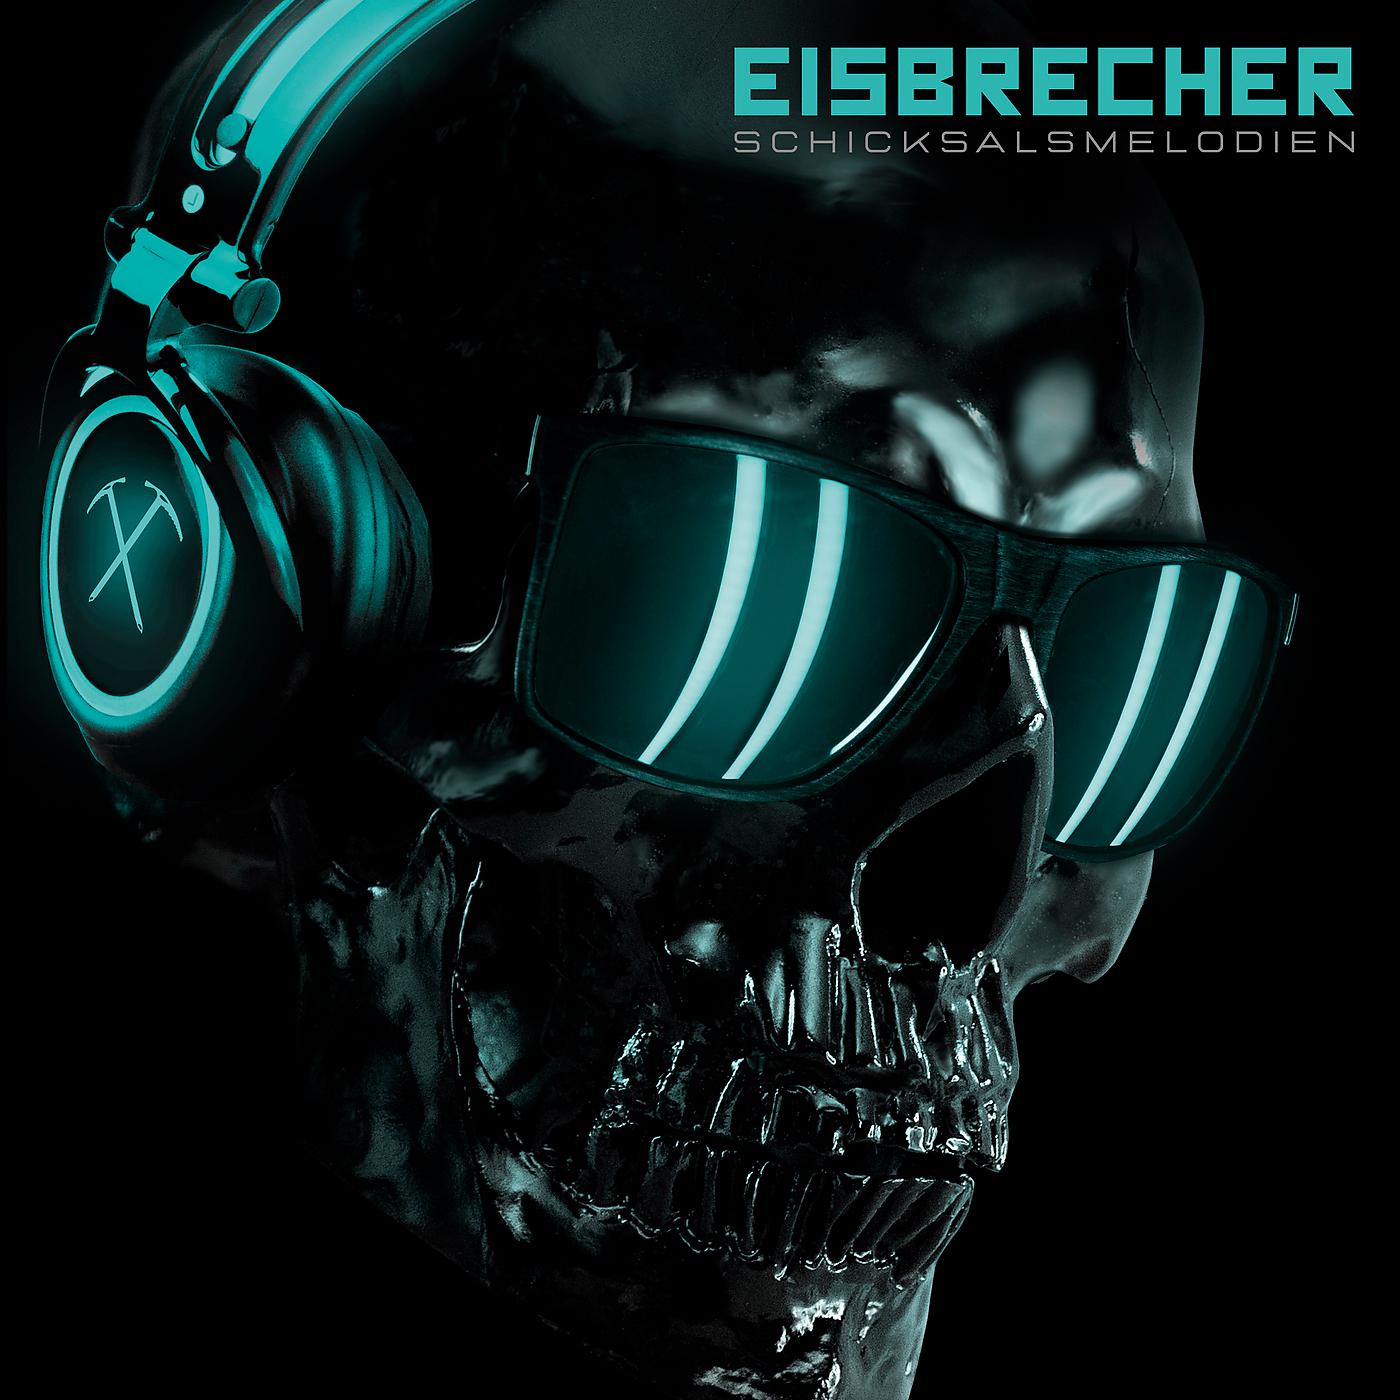 Eisbrecher rot wie liebe. Eisbrecher Schicksalsmelodie 2020 обложка. Айсбрехер группа. Eisbrecher Schicksalsmelodie обложка. Eisbrecher обложки альбомов.